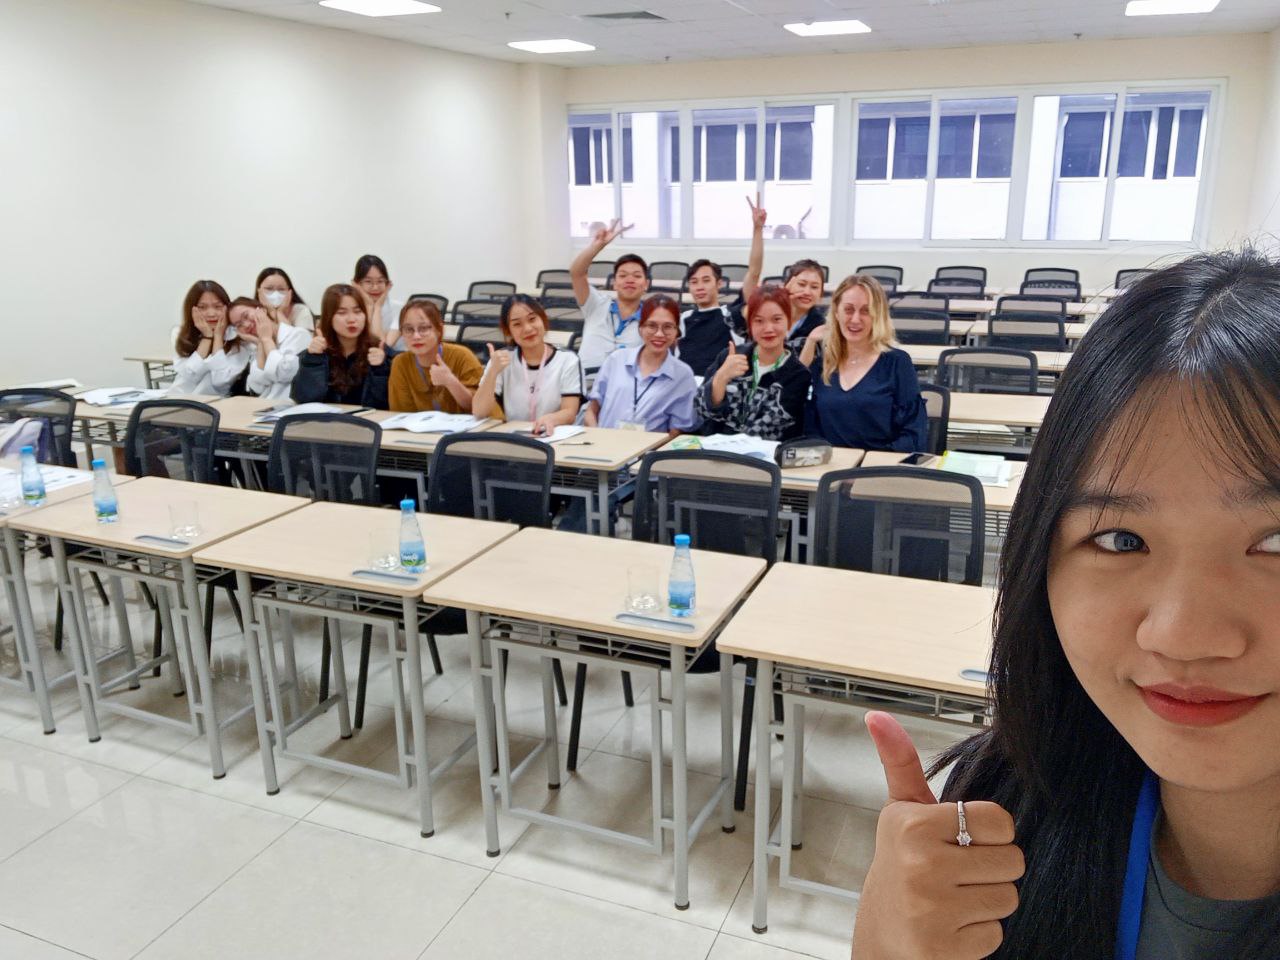 фото: Центр открытого образования на русском языке во Вьетнаме торжественно объявил о начале занятий